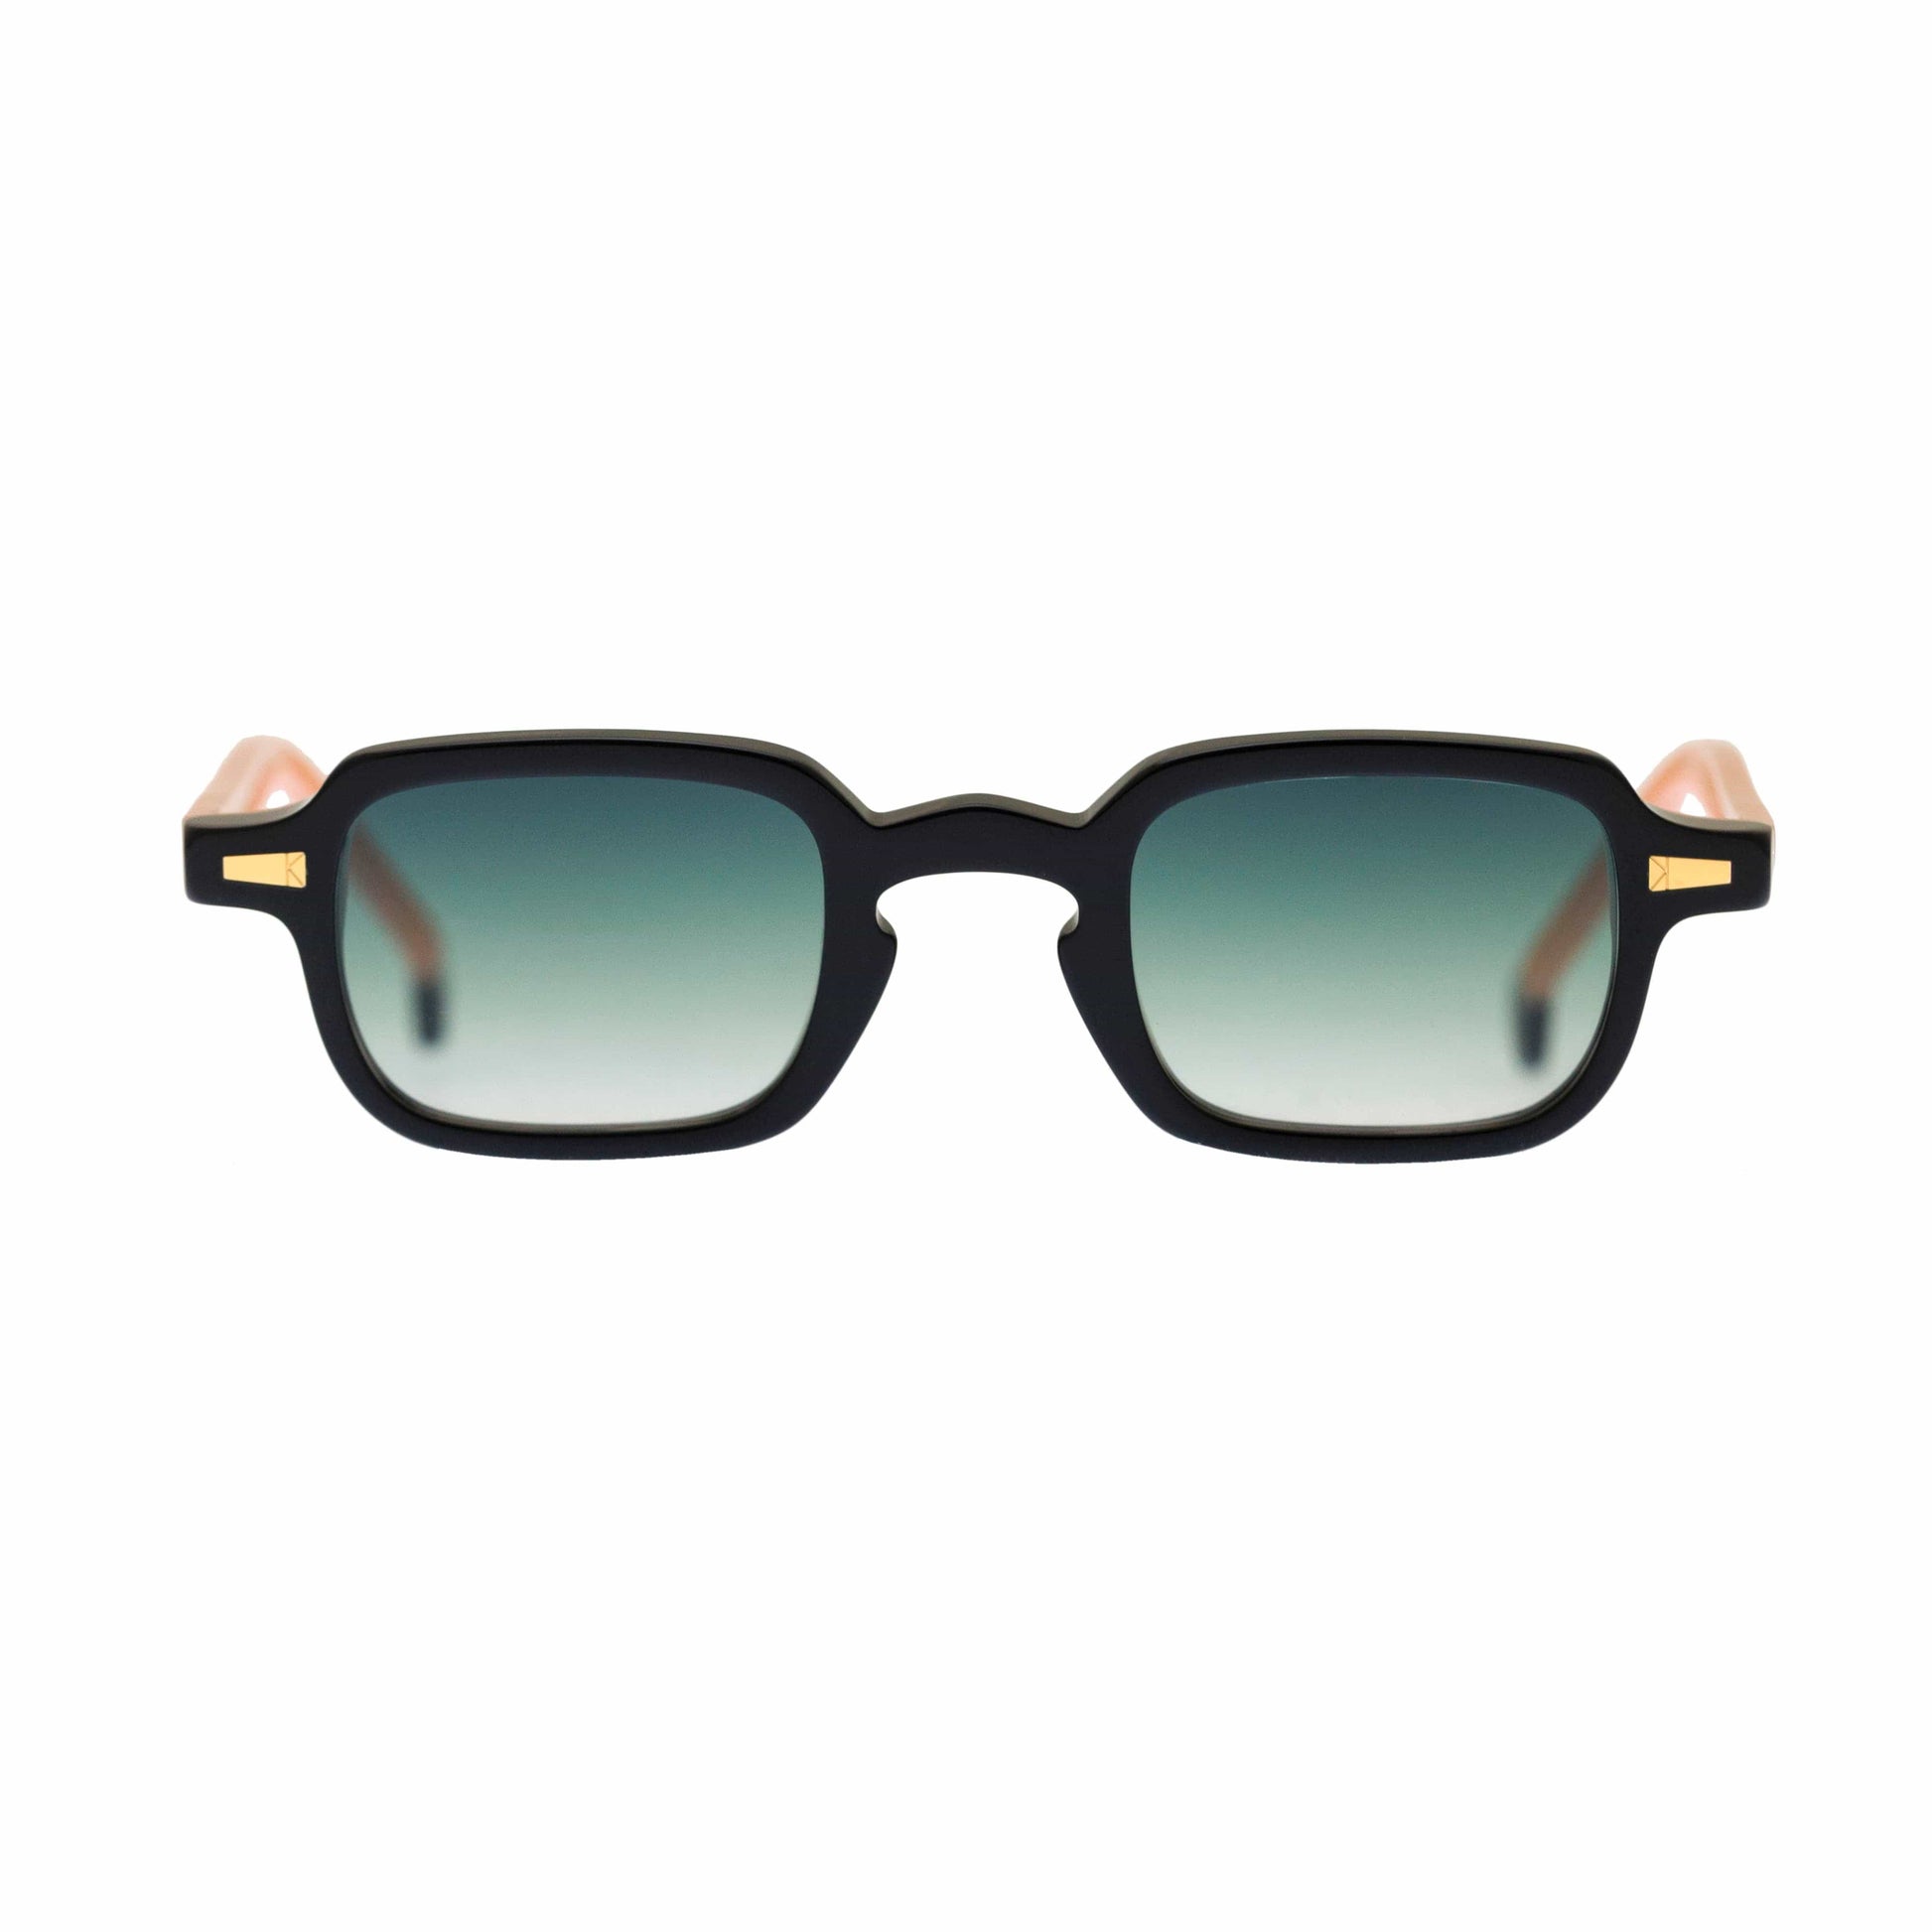 Kyme Occhiali da sole Nero e rosa - lente sfumata verde Kyme Gigi: occhiale da sole rettangolare